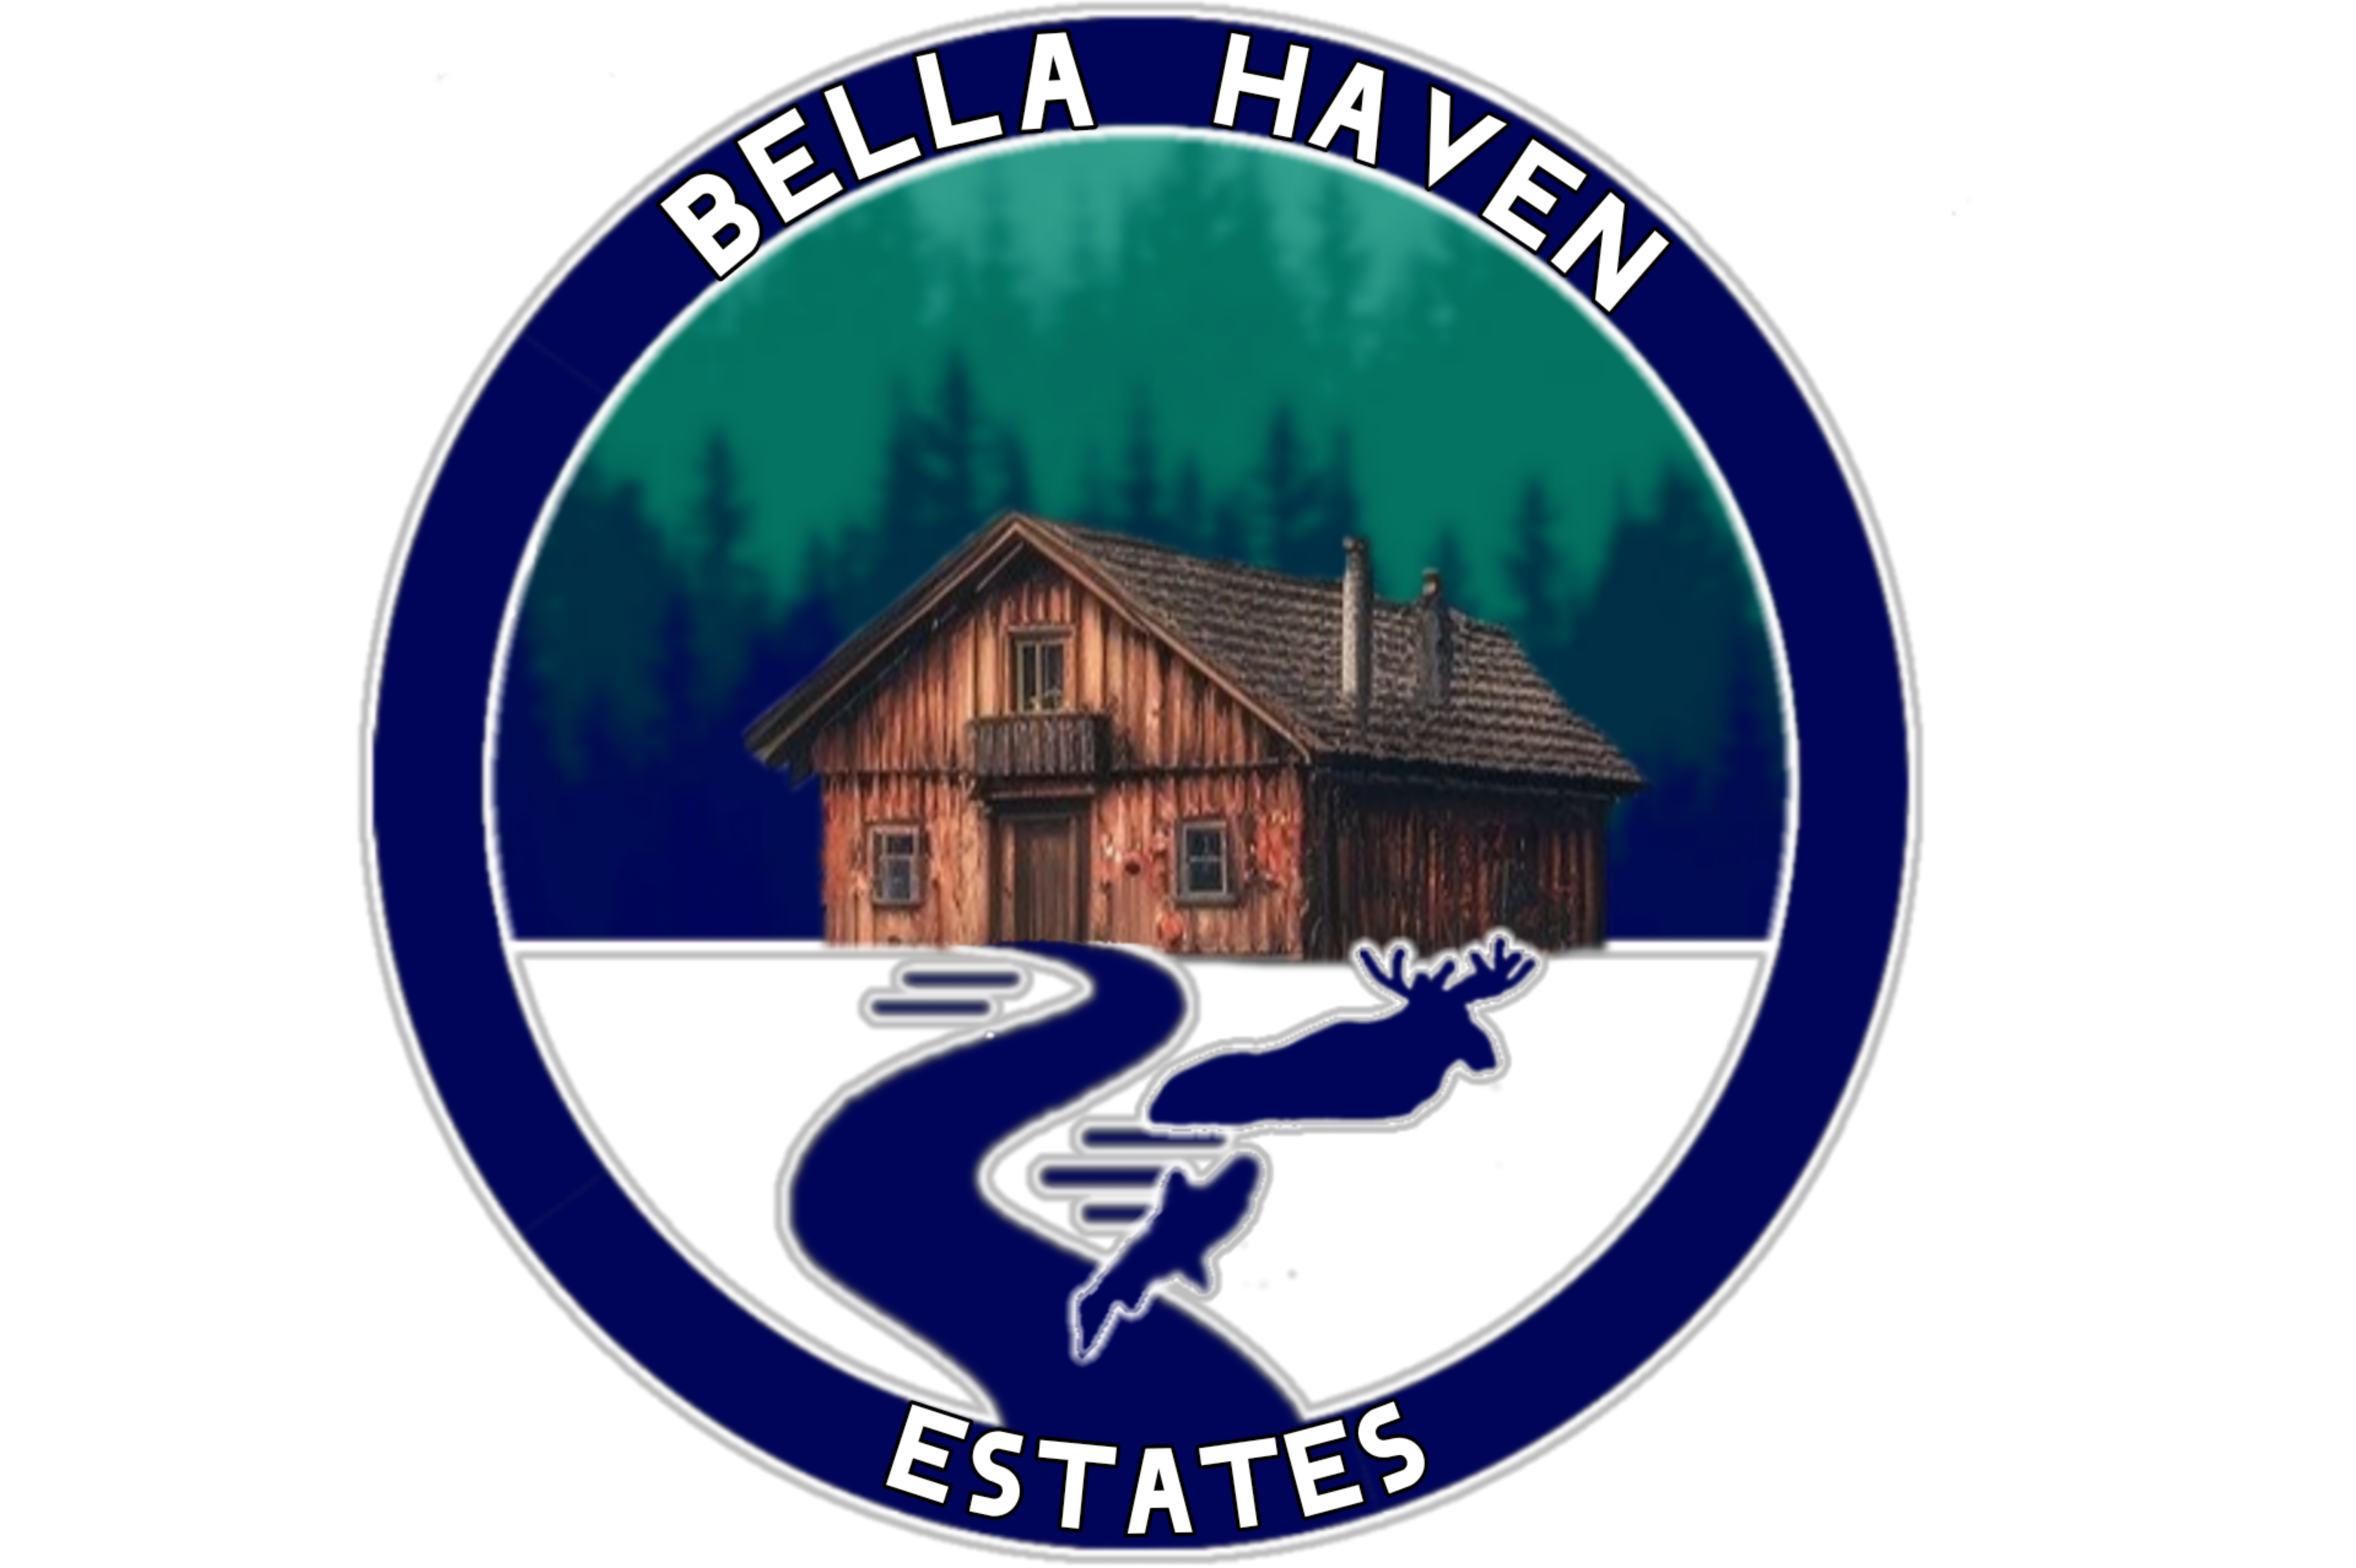 Bella Haven Estates